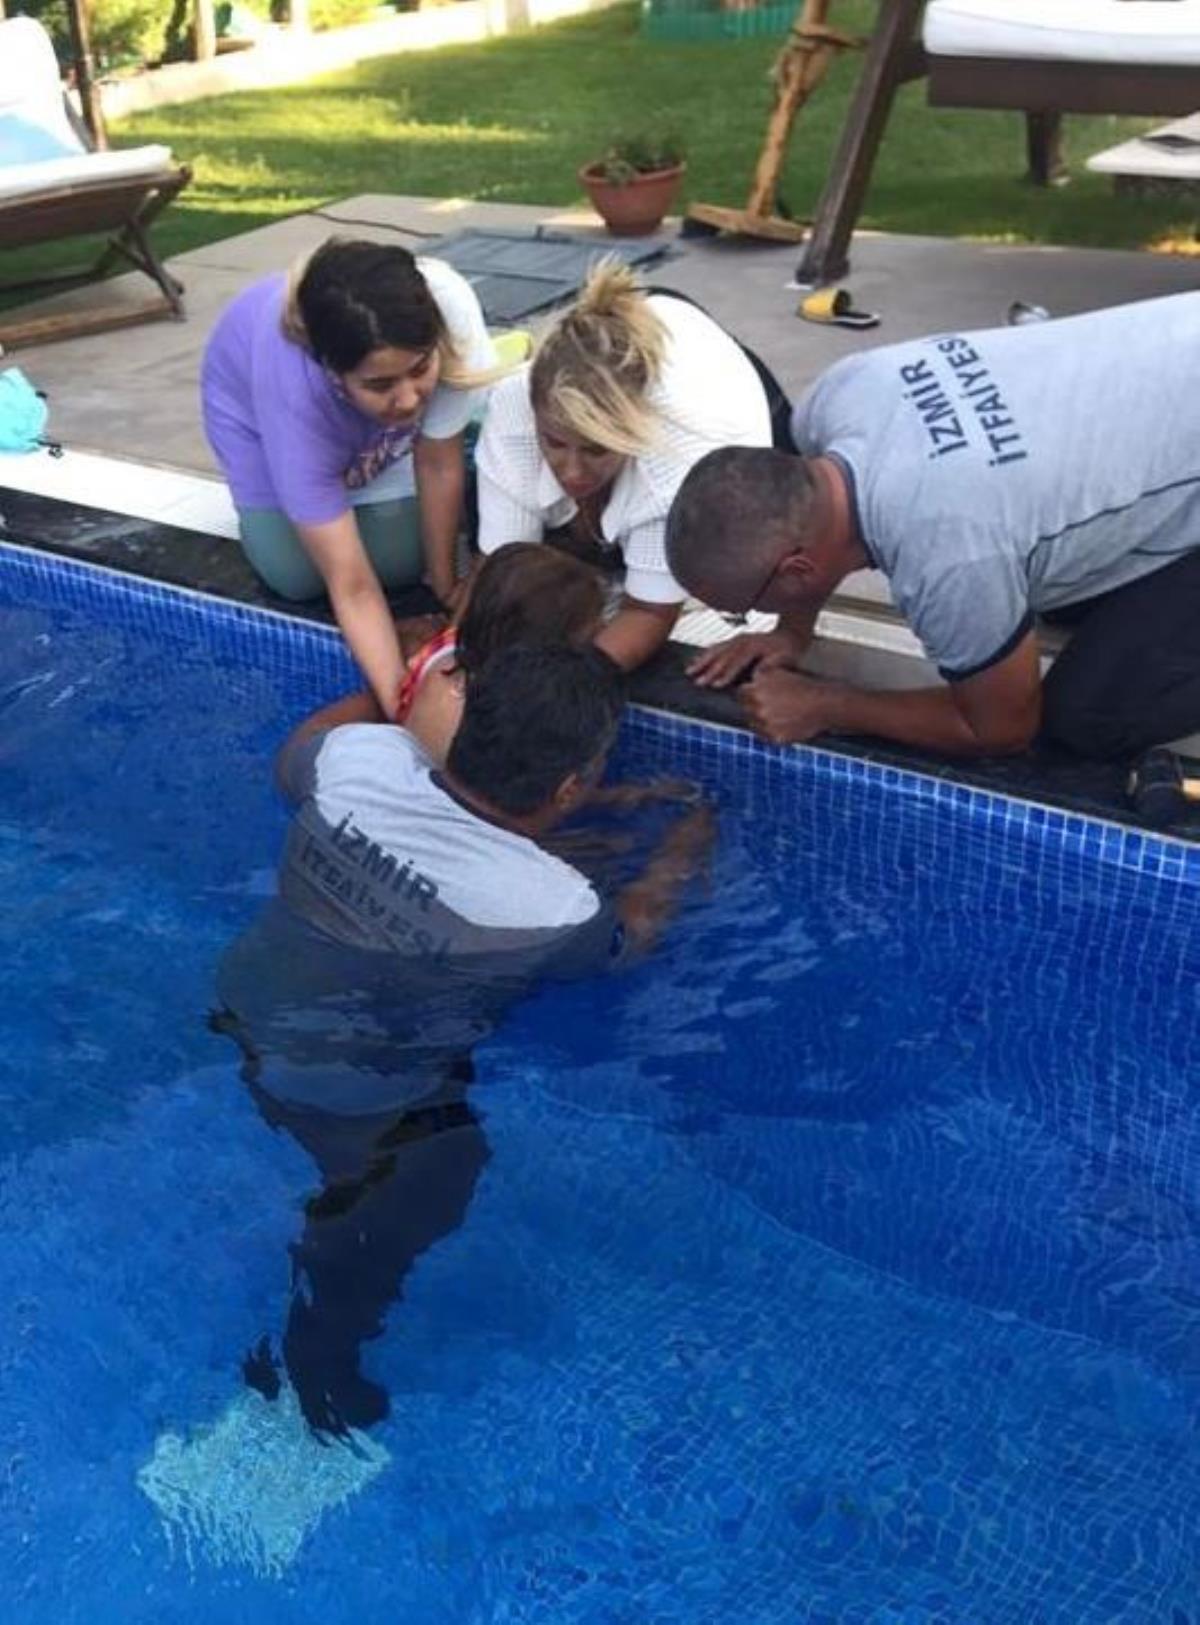 İzmir haber: İzmir’de bileği havuzdaki boruya sıkışan çocuğu itfaiye ekipleri kurtardı